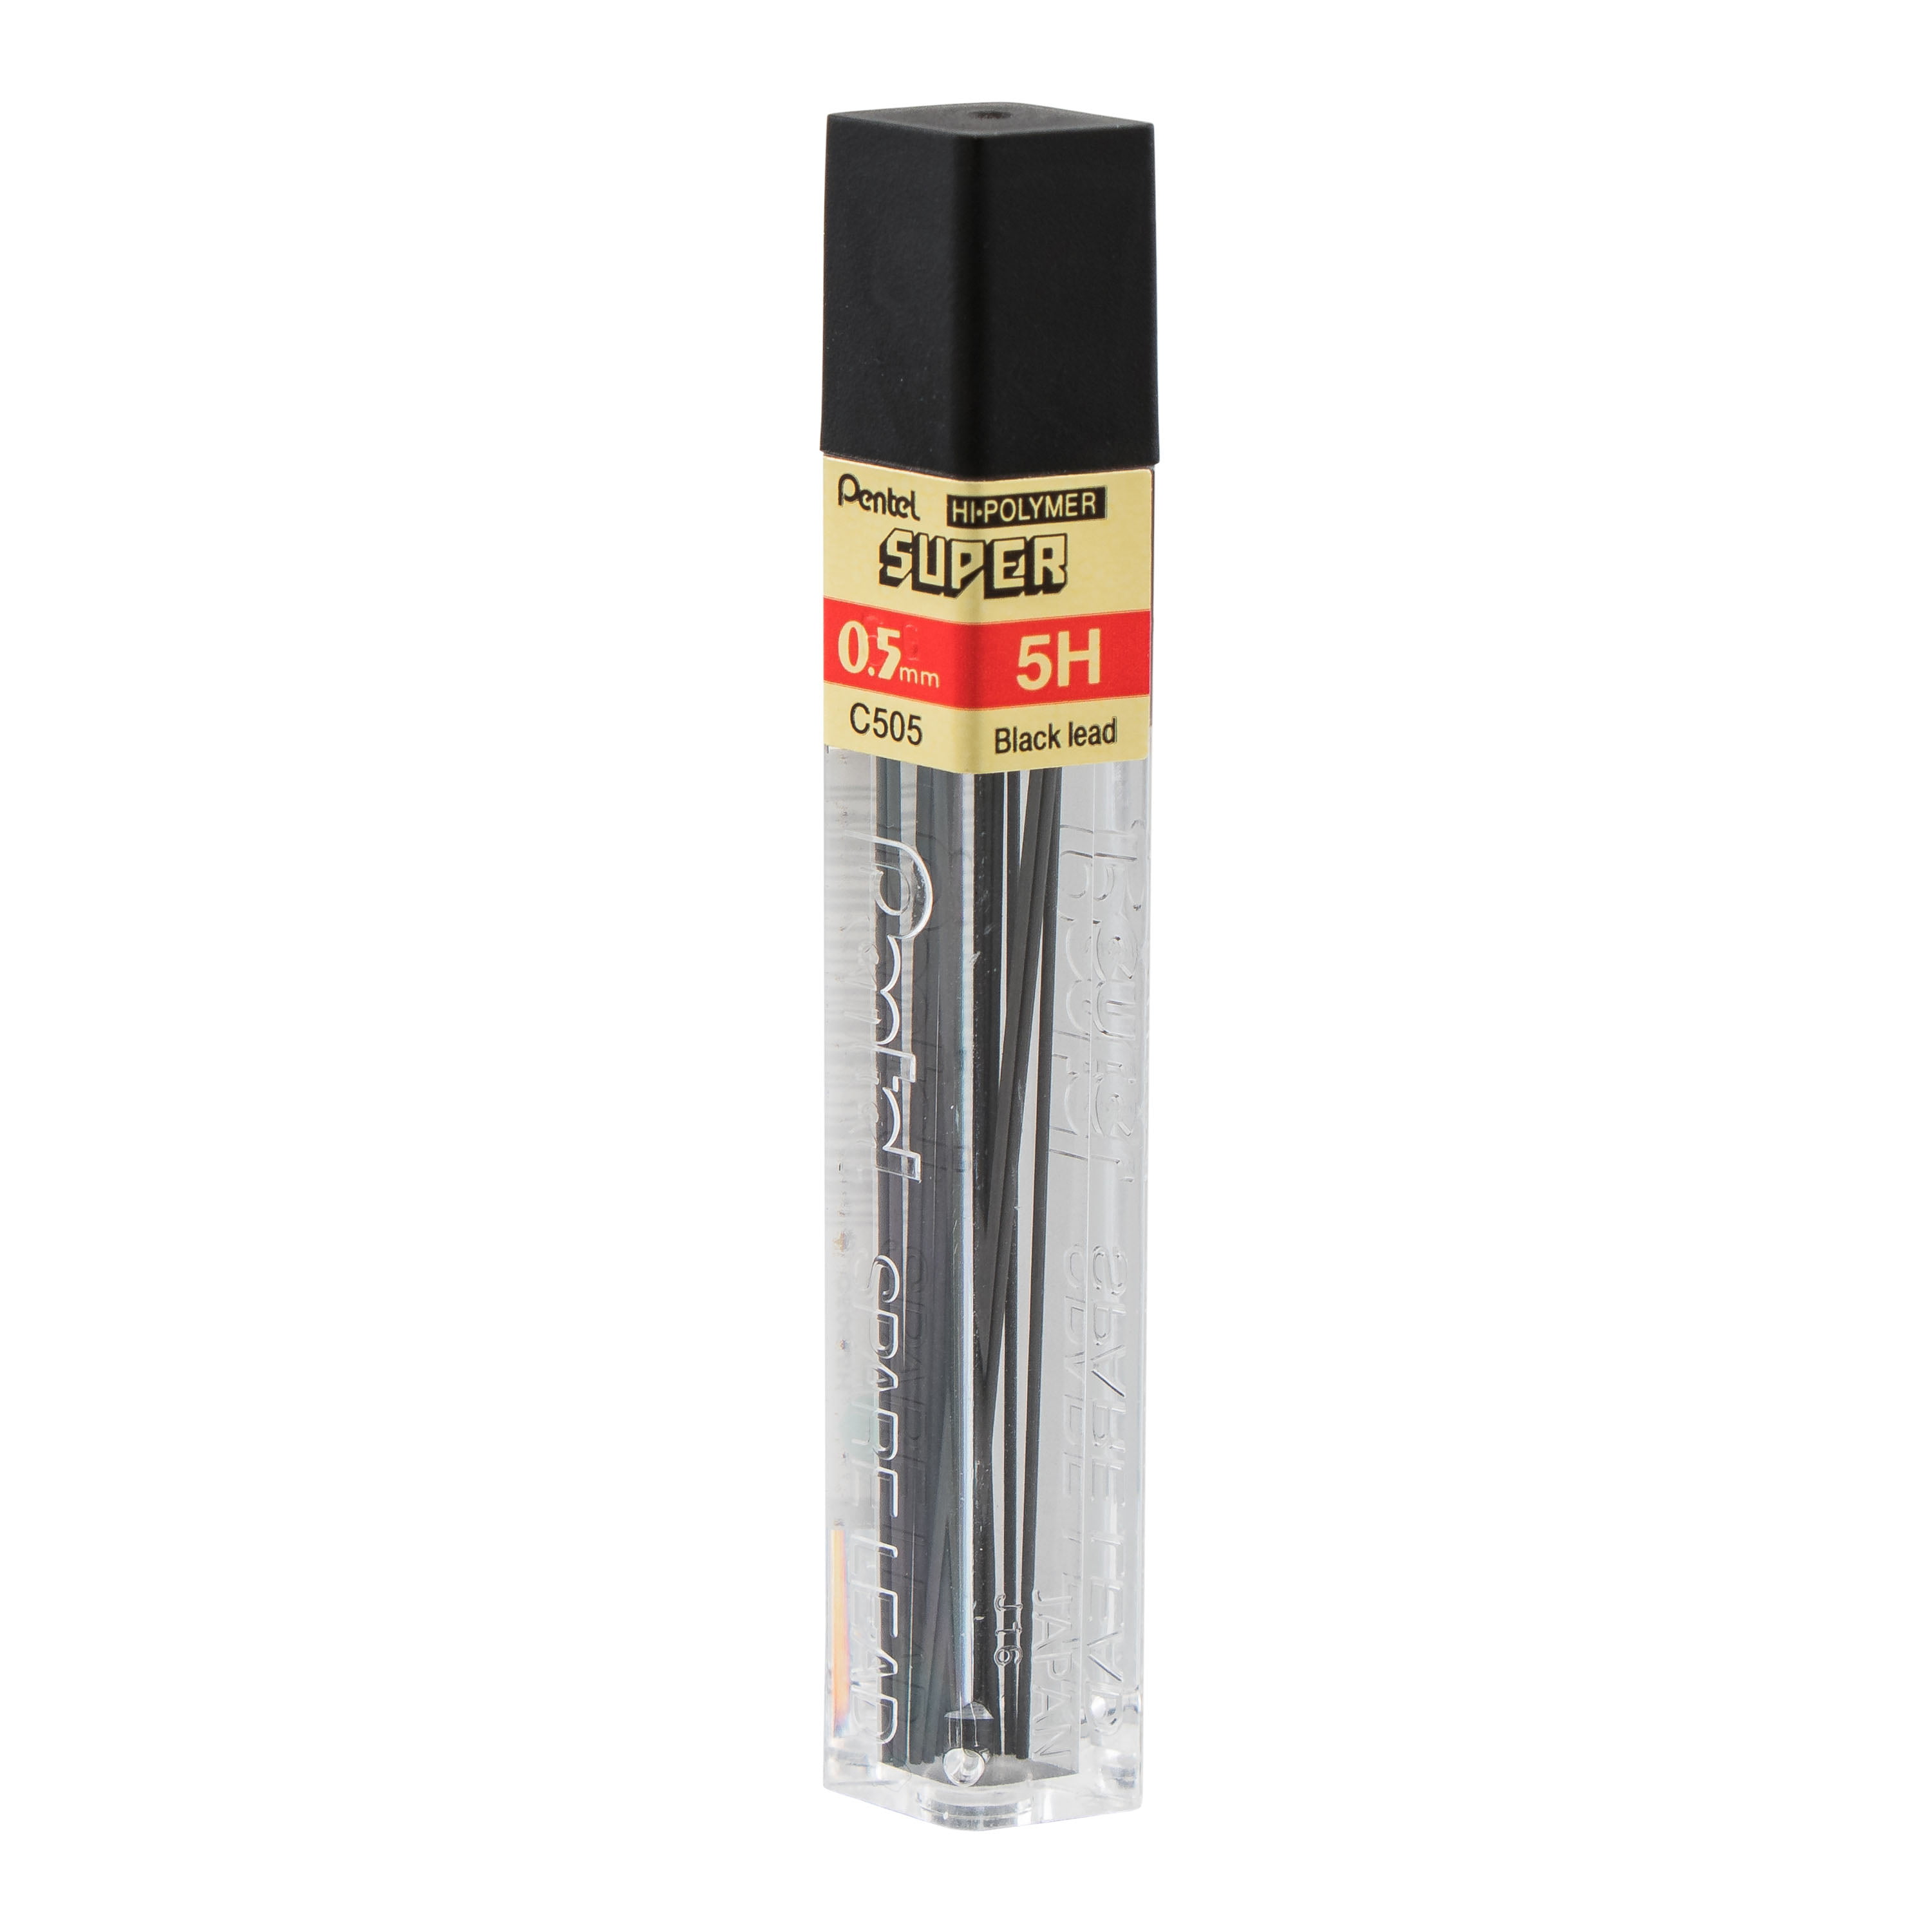 10 tubes Pentel® Super JAPAN 25% STRONGER 0.5mm Lead Refills 